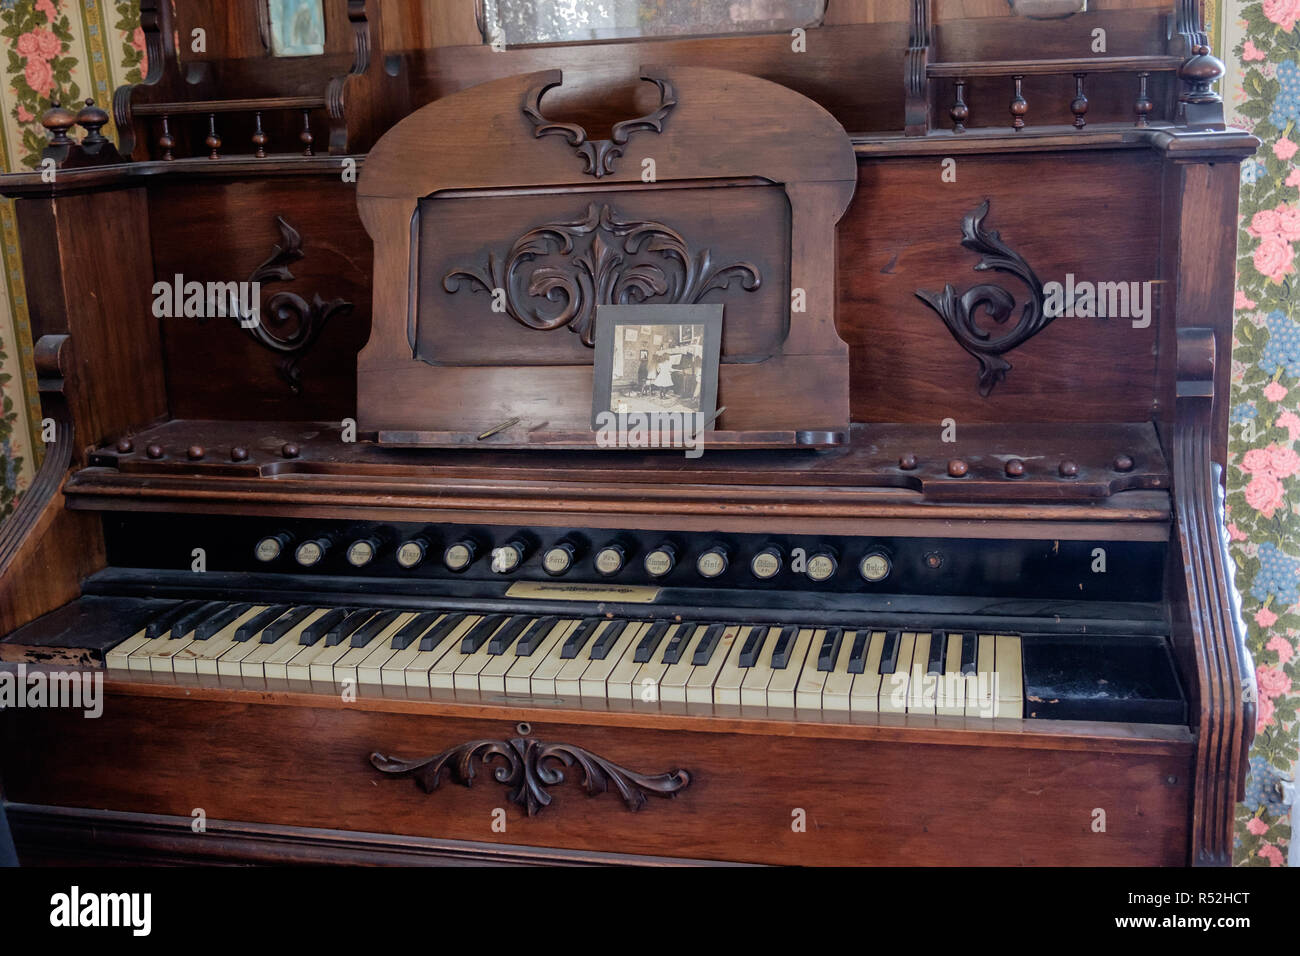 Pompe d'orgue avec boutons et son clavier de piano. Photo ancienne vintage  & mur floral papier. Historique de l'intérieur de la maison, Texan McKinney  Photo Stock - Alamy